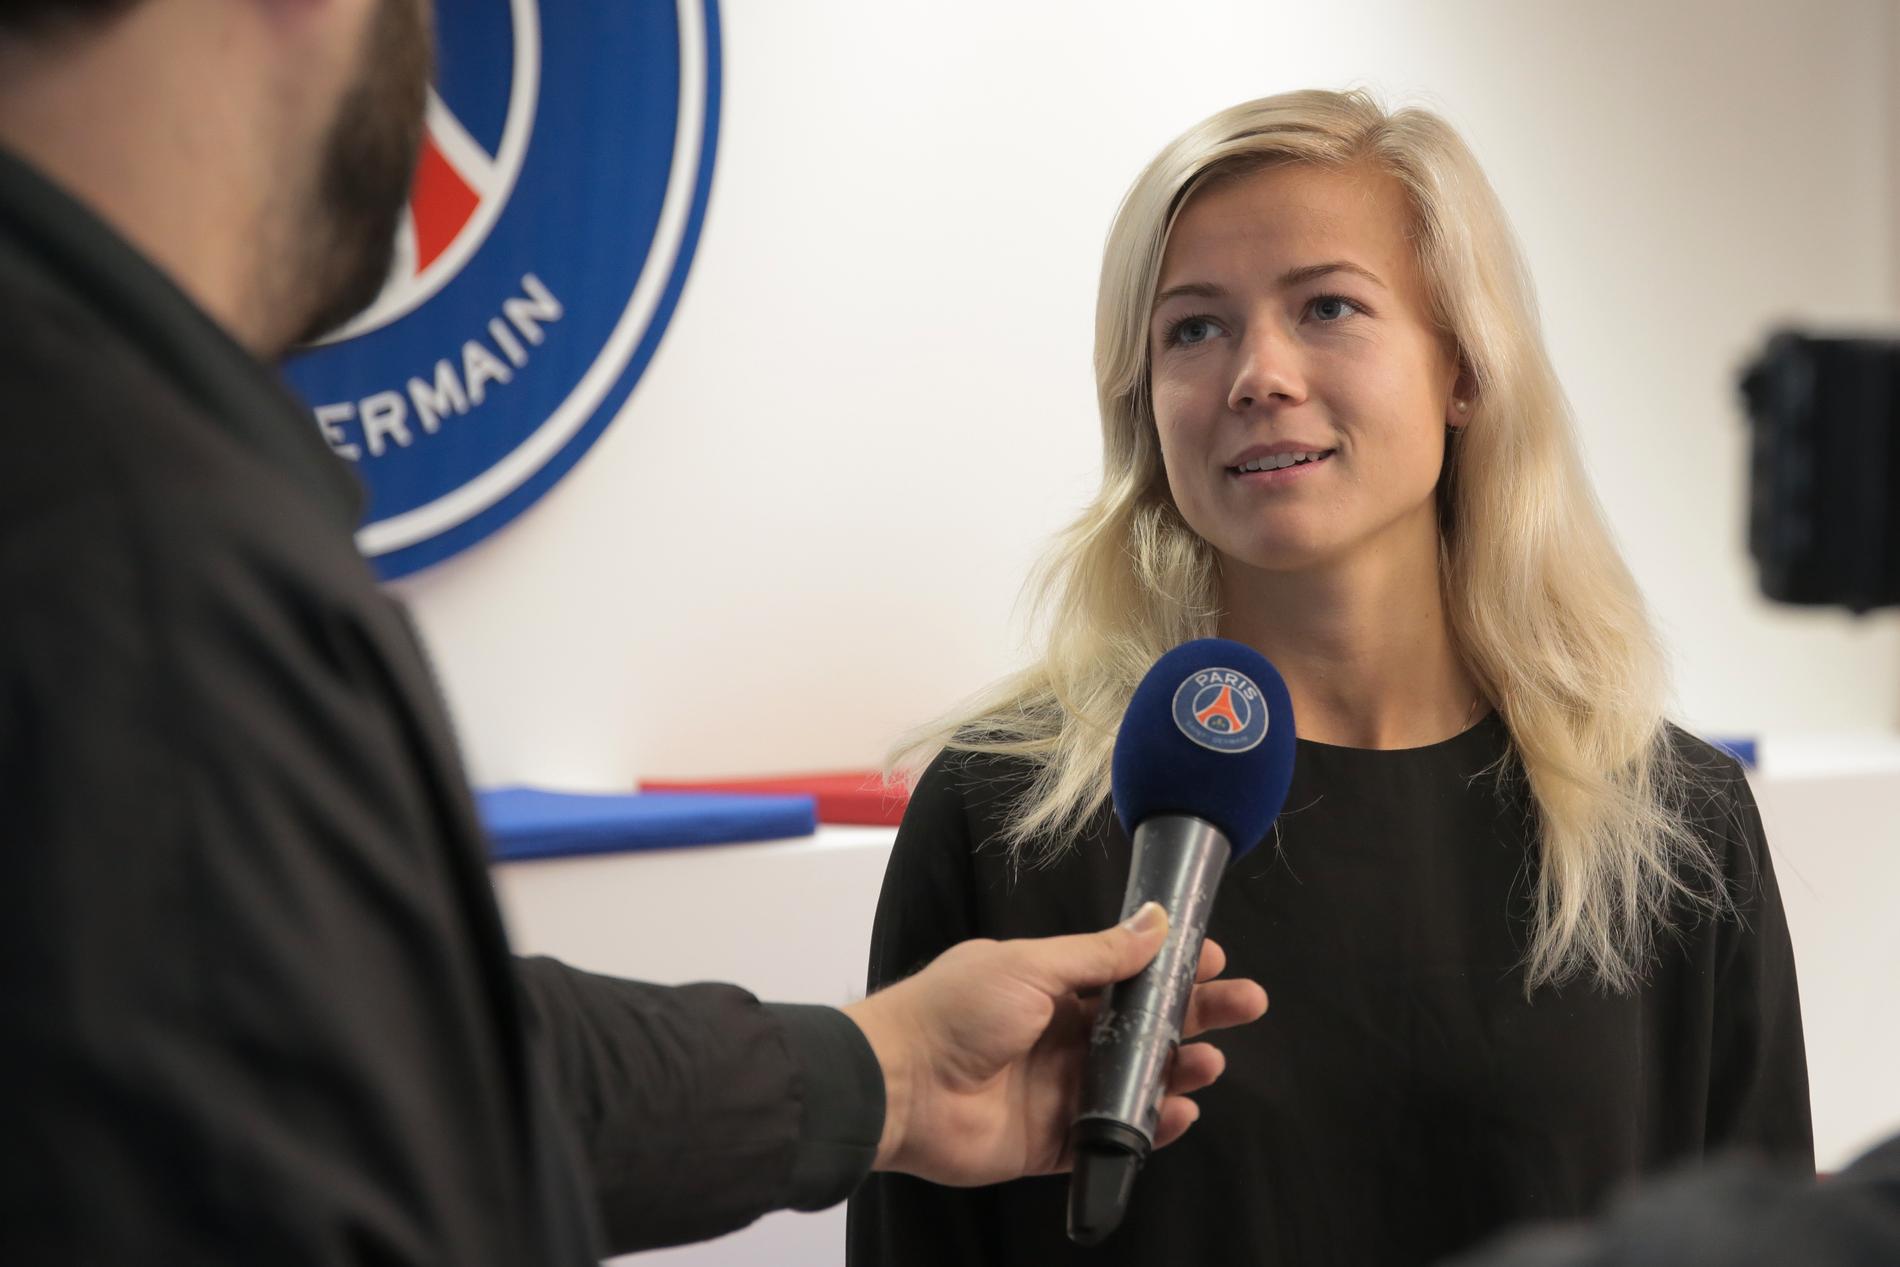 Det gick fort när Hanna Glas lämnade damallsvenska Eskilstuna för spel i Paris Saint-Germain förra veckan.